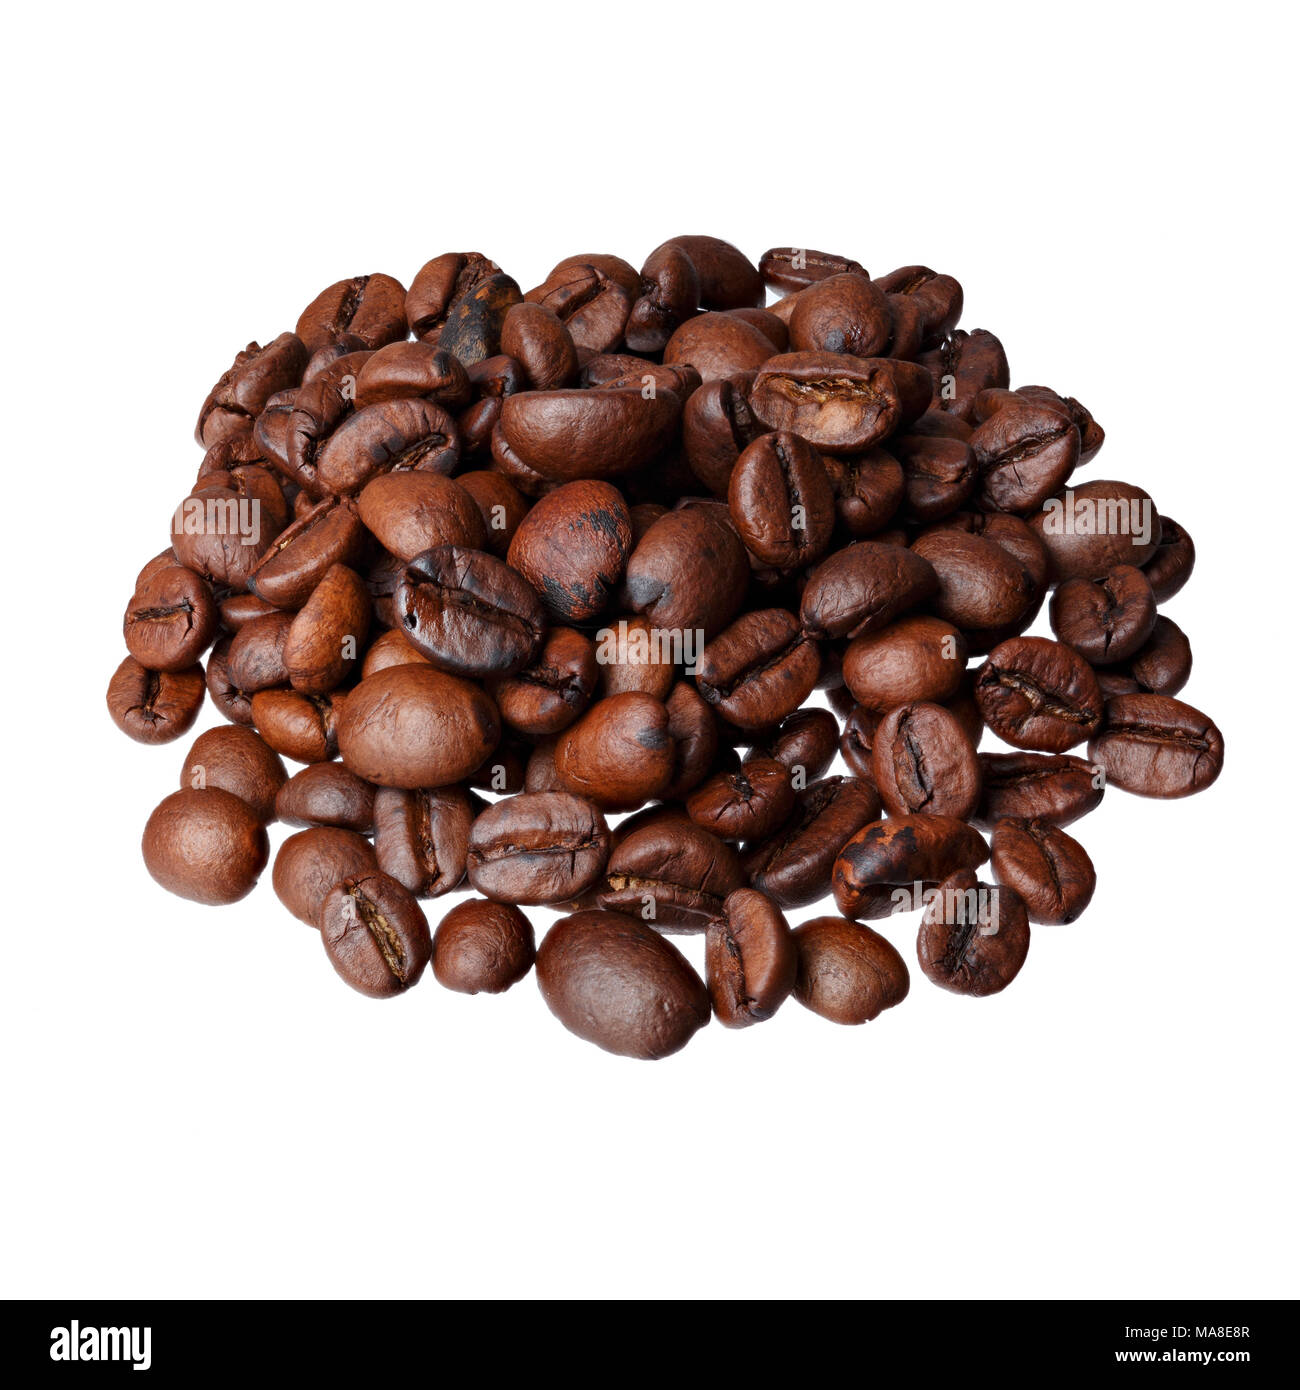 Coffee with tiramisu smell gourmet coffee on white background. Stock Photo